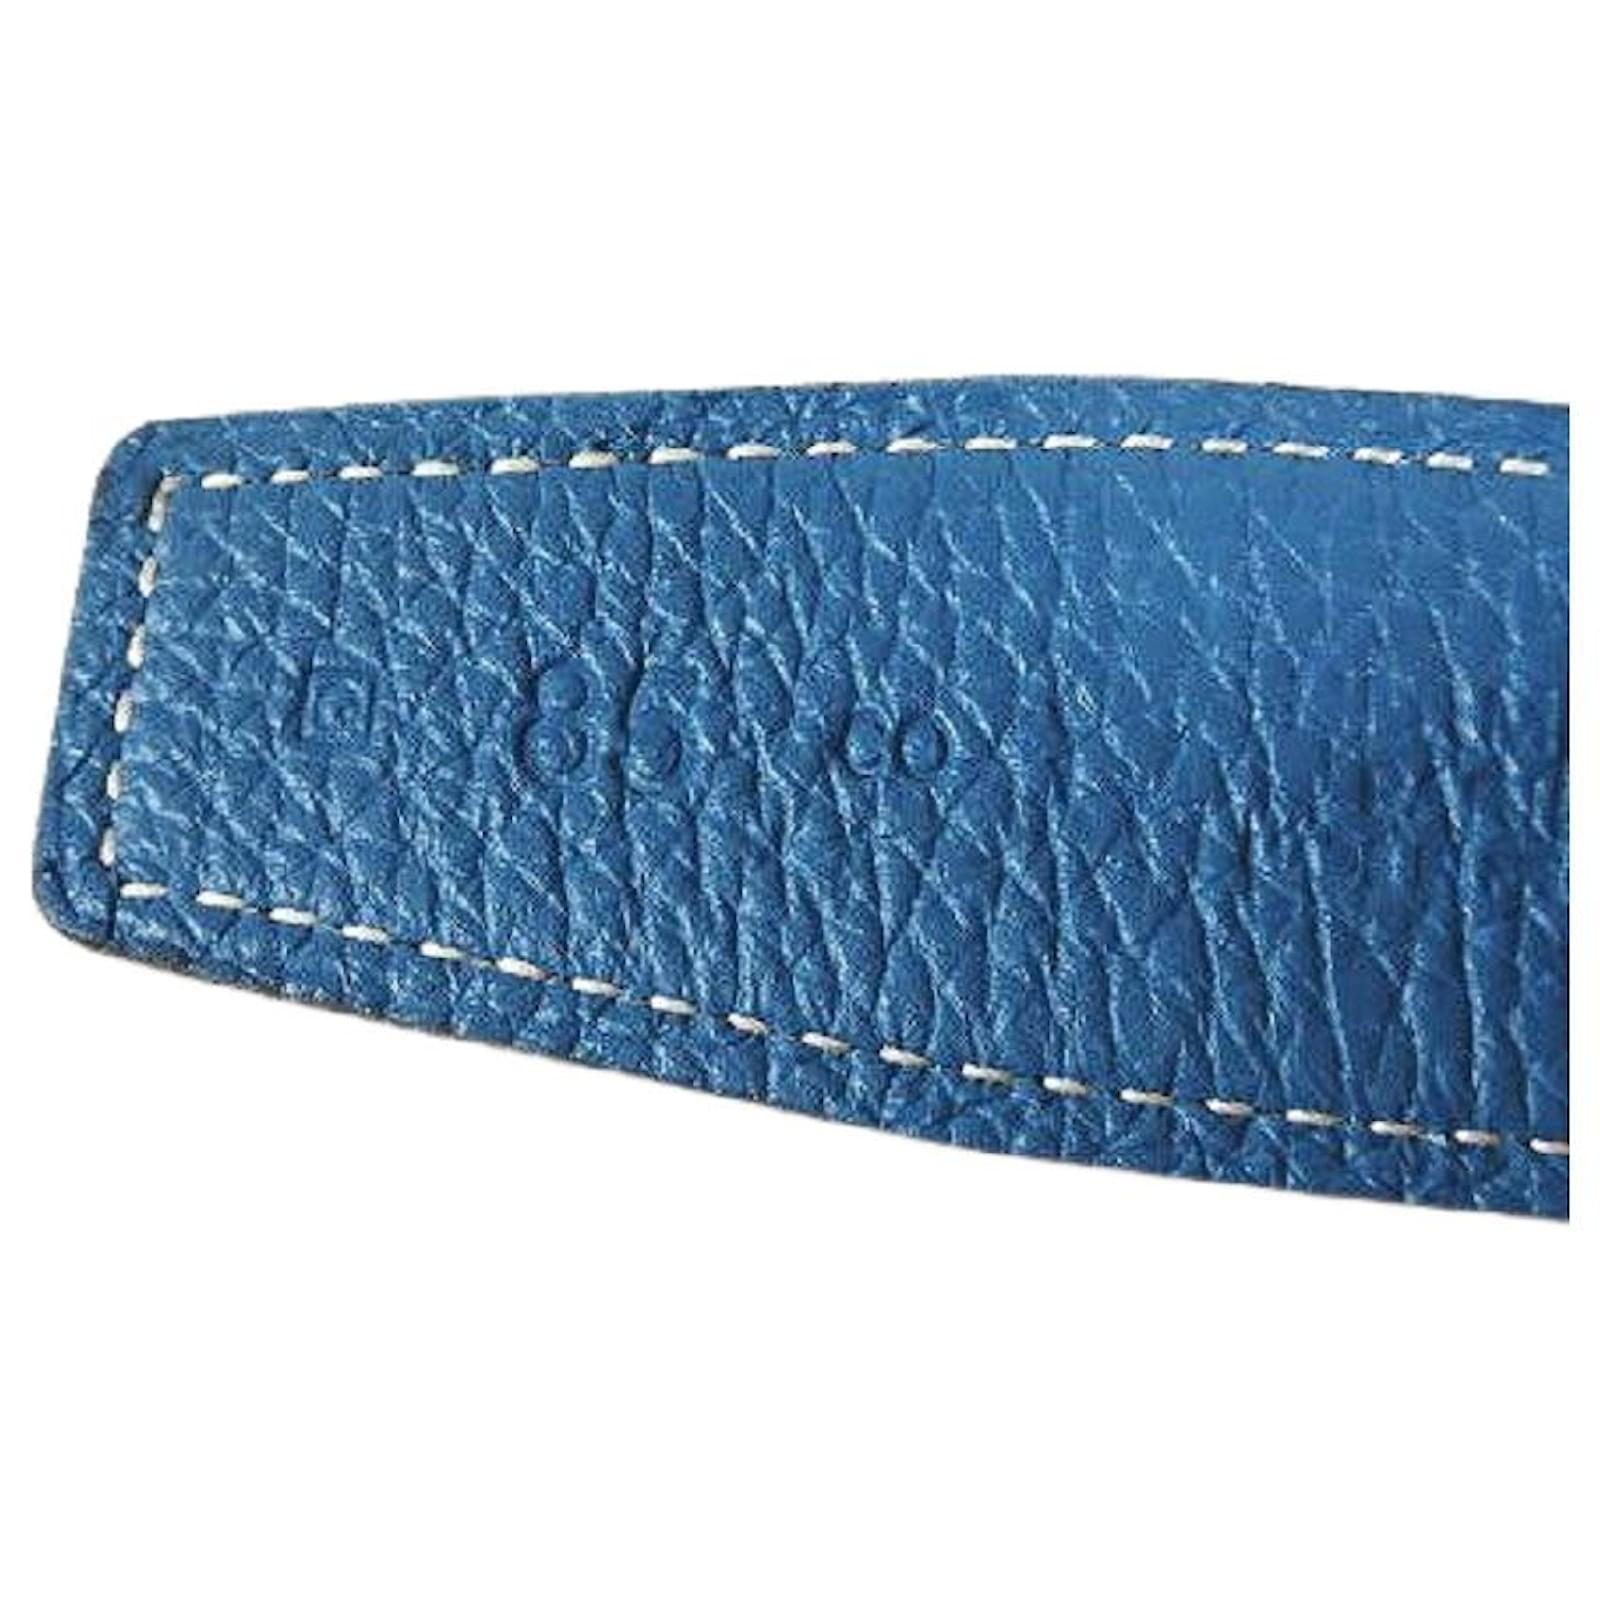 HERMES belt Constance H Reversible belt Courchevel/Box calf blue blue –